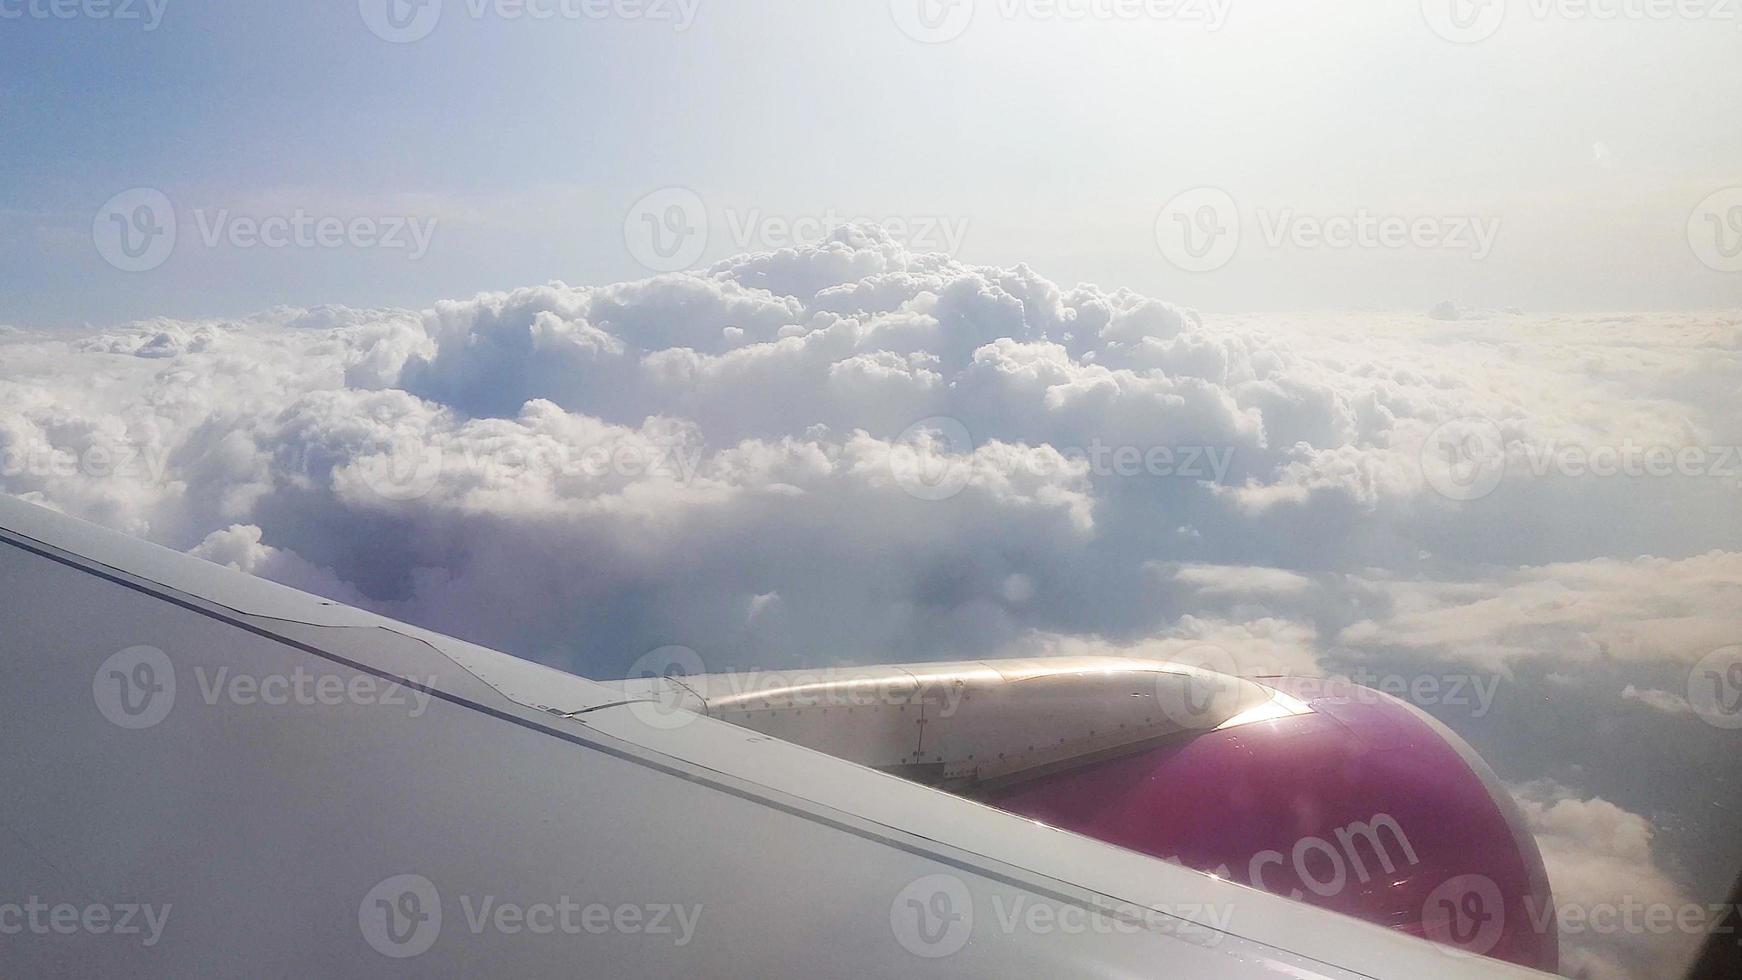 flyger över molnen. utsikt från flygplanspassagerarfönster med moln och horisont. foto